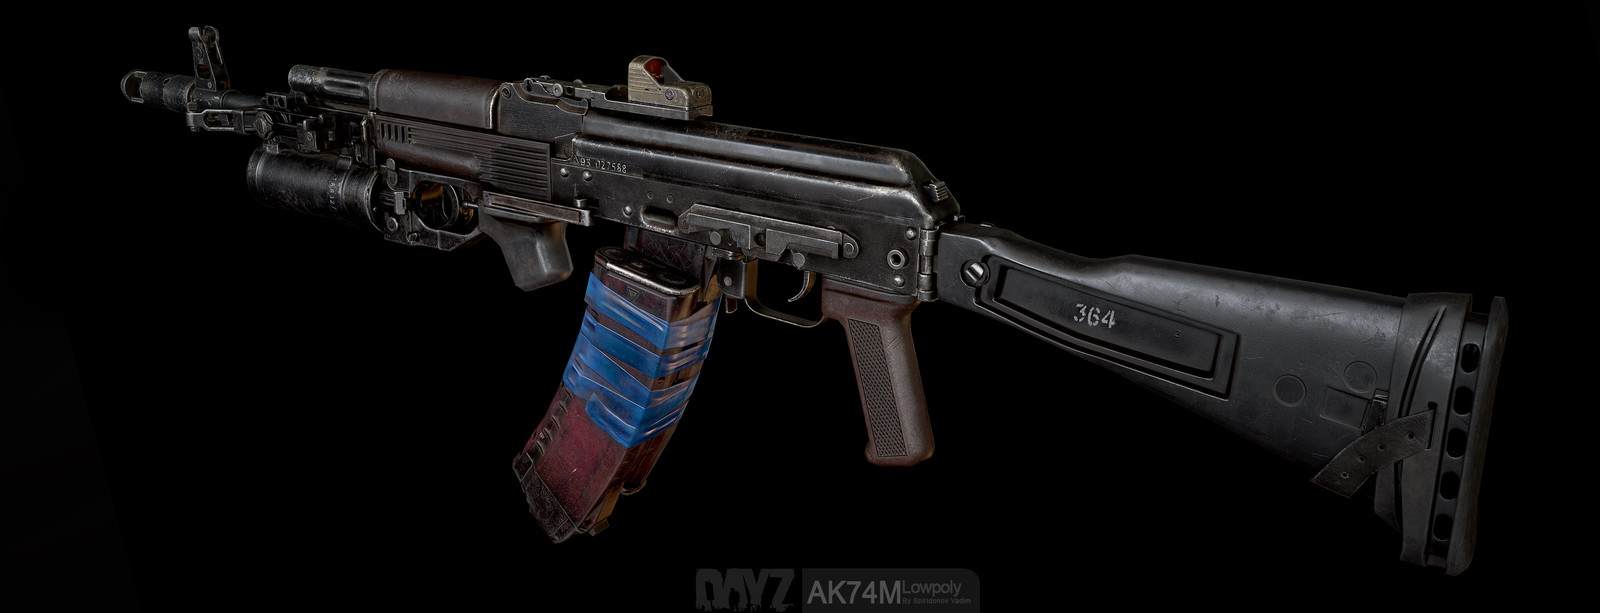 Ak74m assault rifle для fallout 4 фото 41